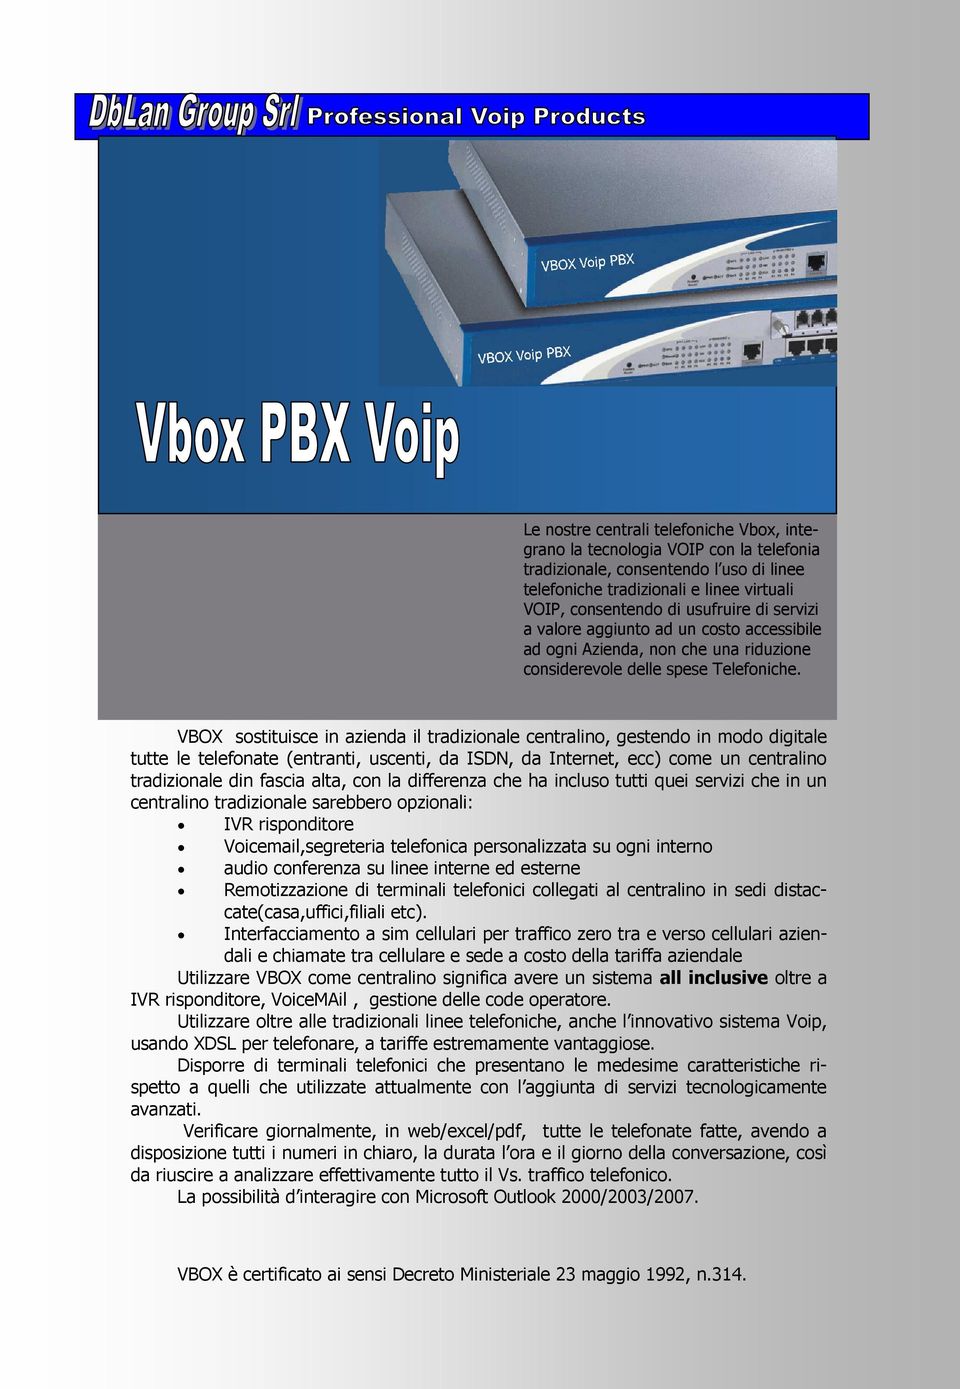 VBOX sostituisce in azienda il tradizionale centralino, gestendo in modo digitale tutte le telefonate (entranti, uscenti, da ISDN, da Internet, ecc) come un centralino tradizionale din fascia alta,